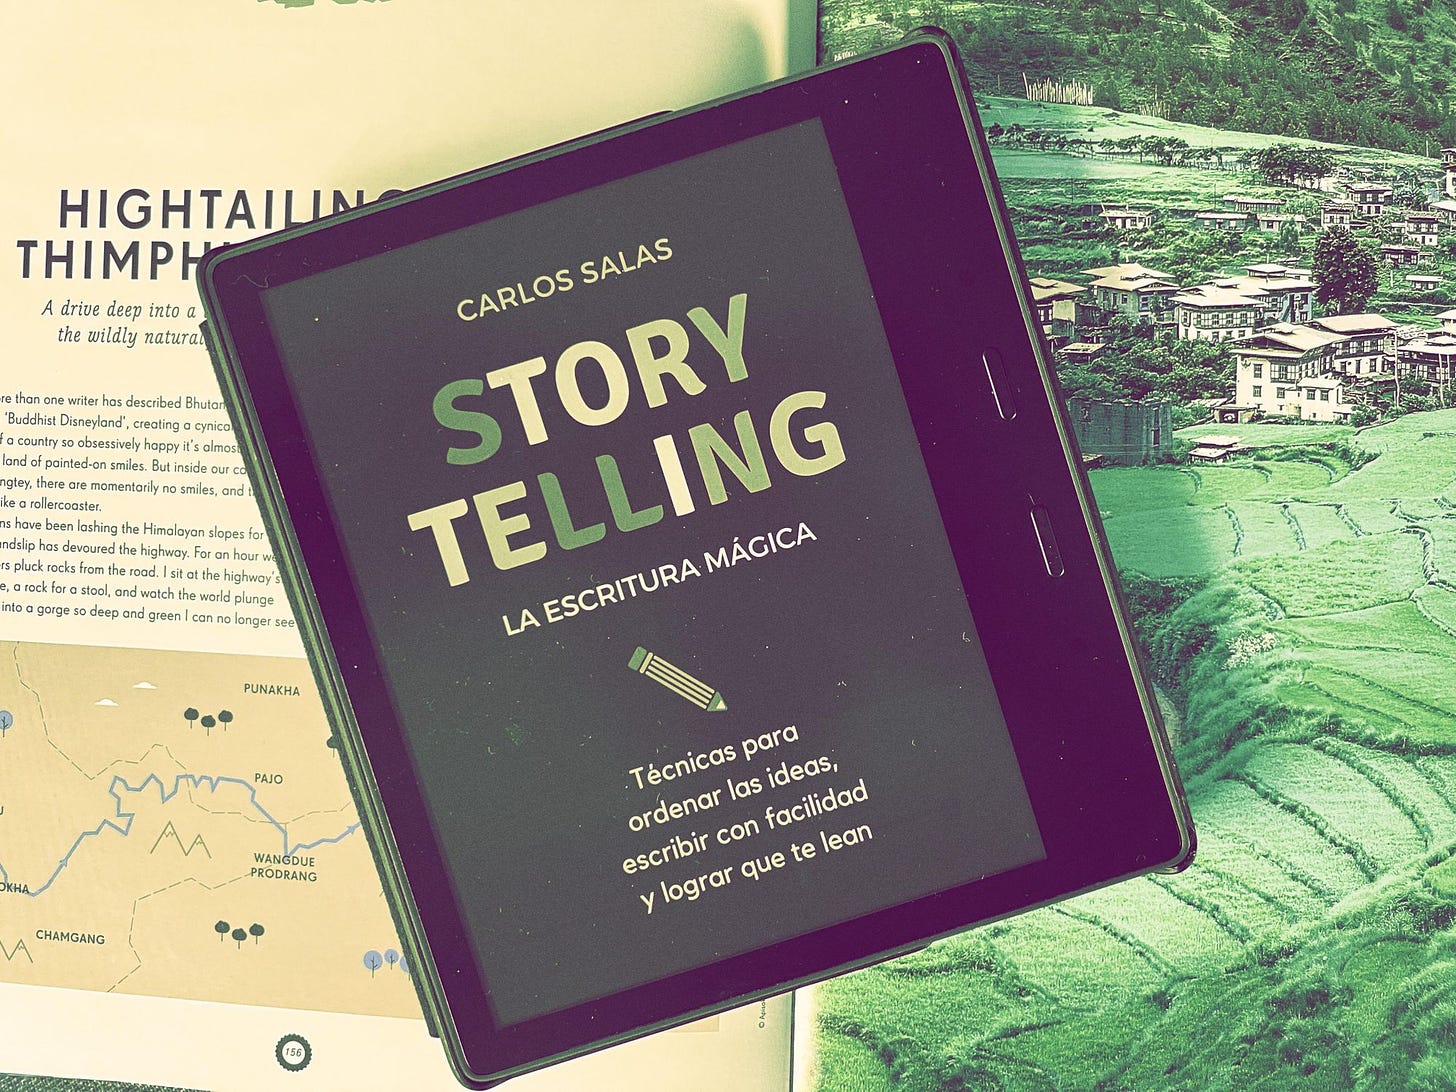 Review: Storytelling, la escritura mágica - Carlos Salas